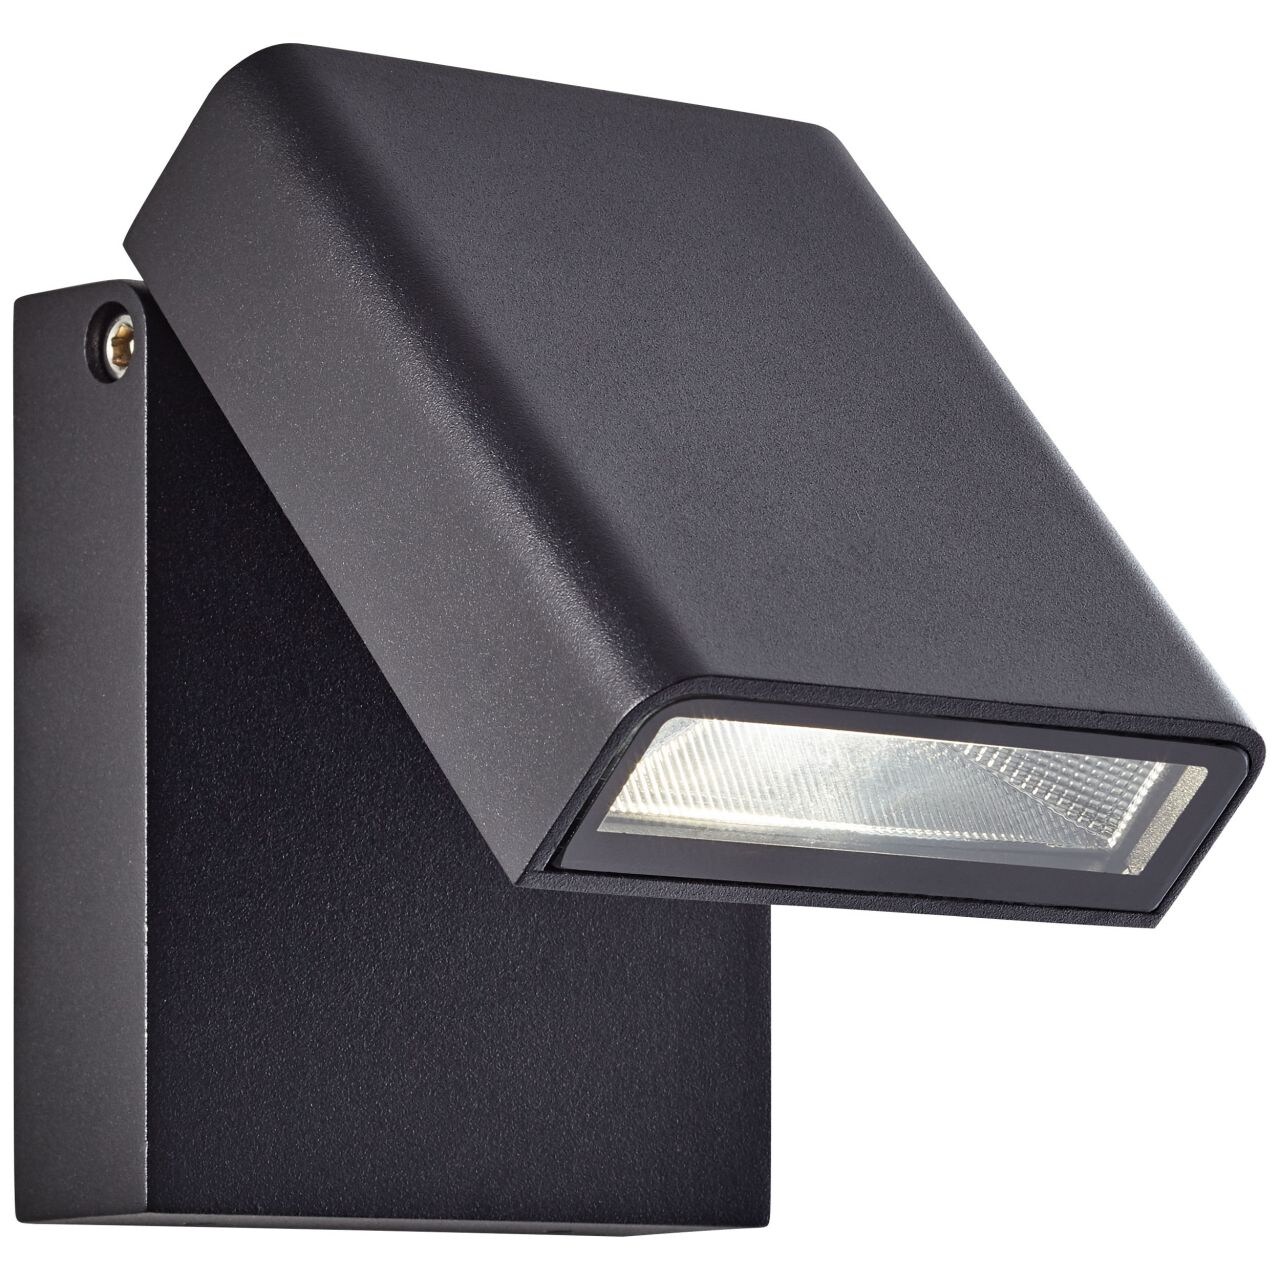 BRILLIANT Lampe Toya LED Außenwandstrahler schwarz   1x 7W LED integriert, 736lm, 4200K   IP-Schutzart: 44 - spritzwasse